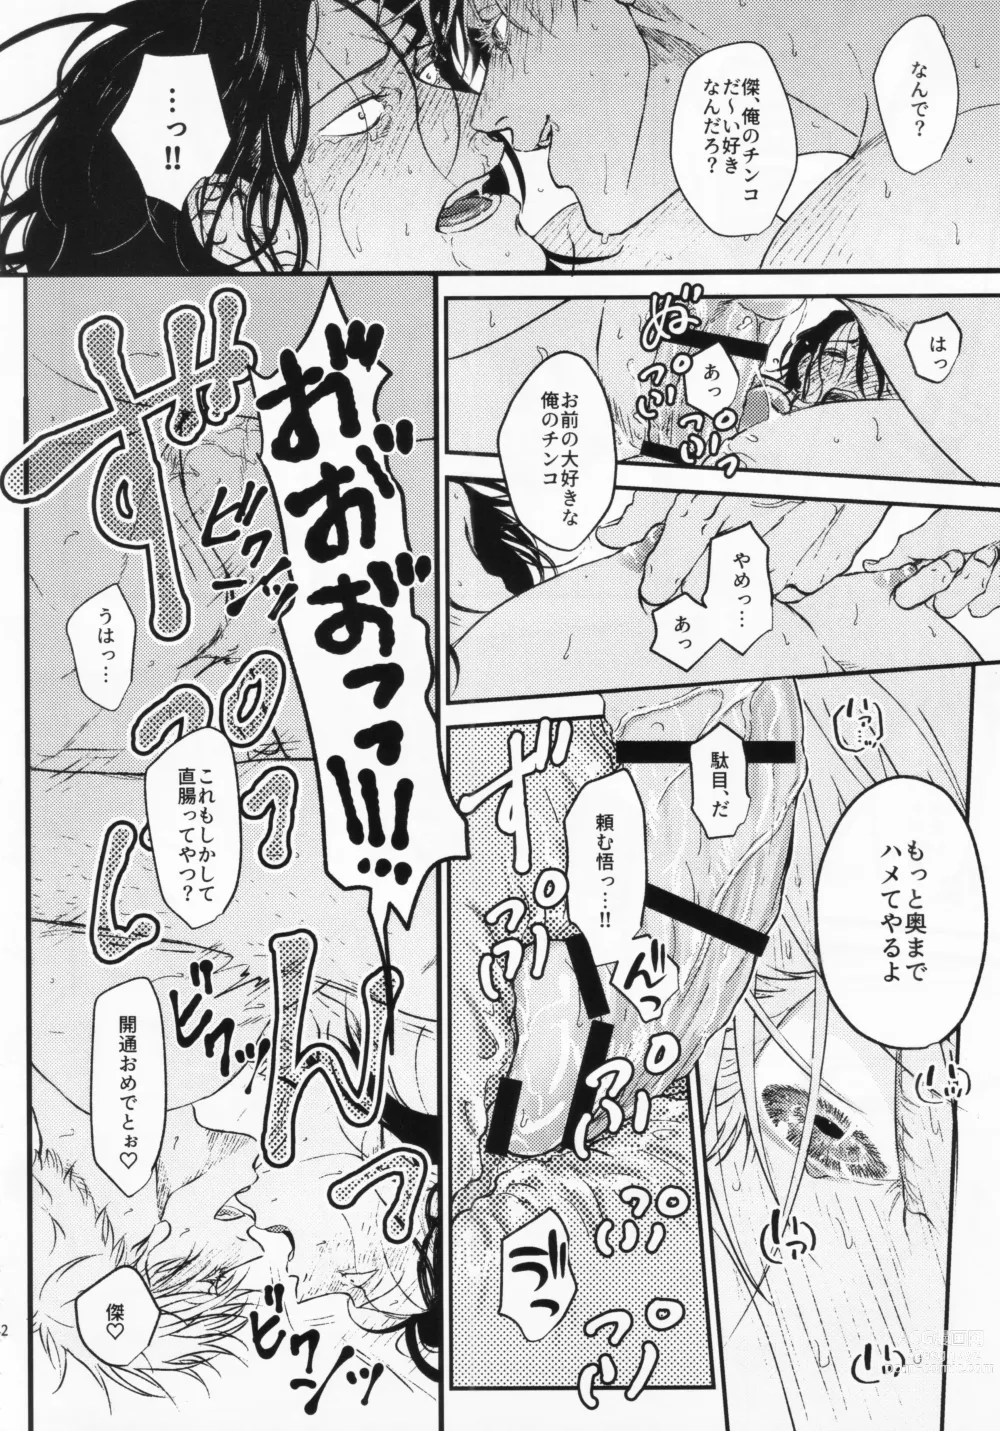 Page 39 of doujinshi Surussho.